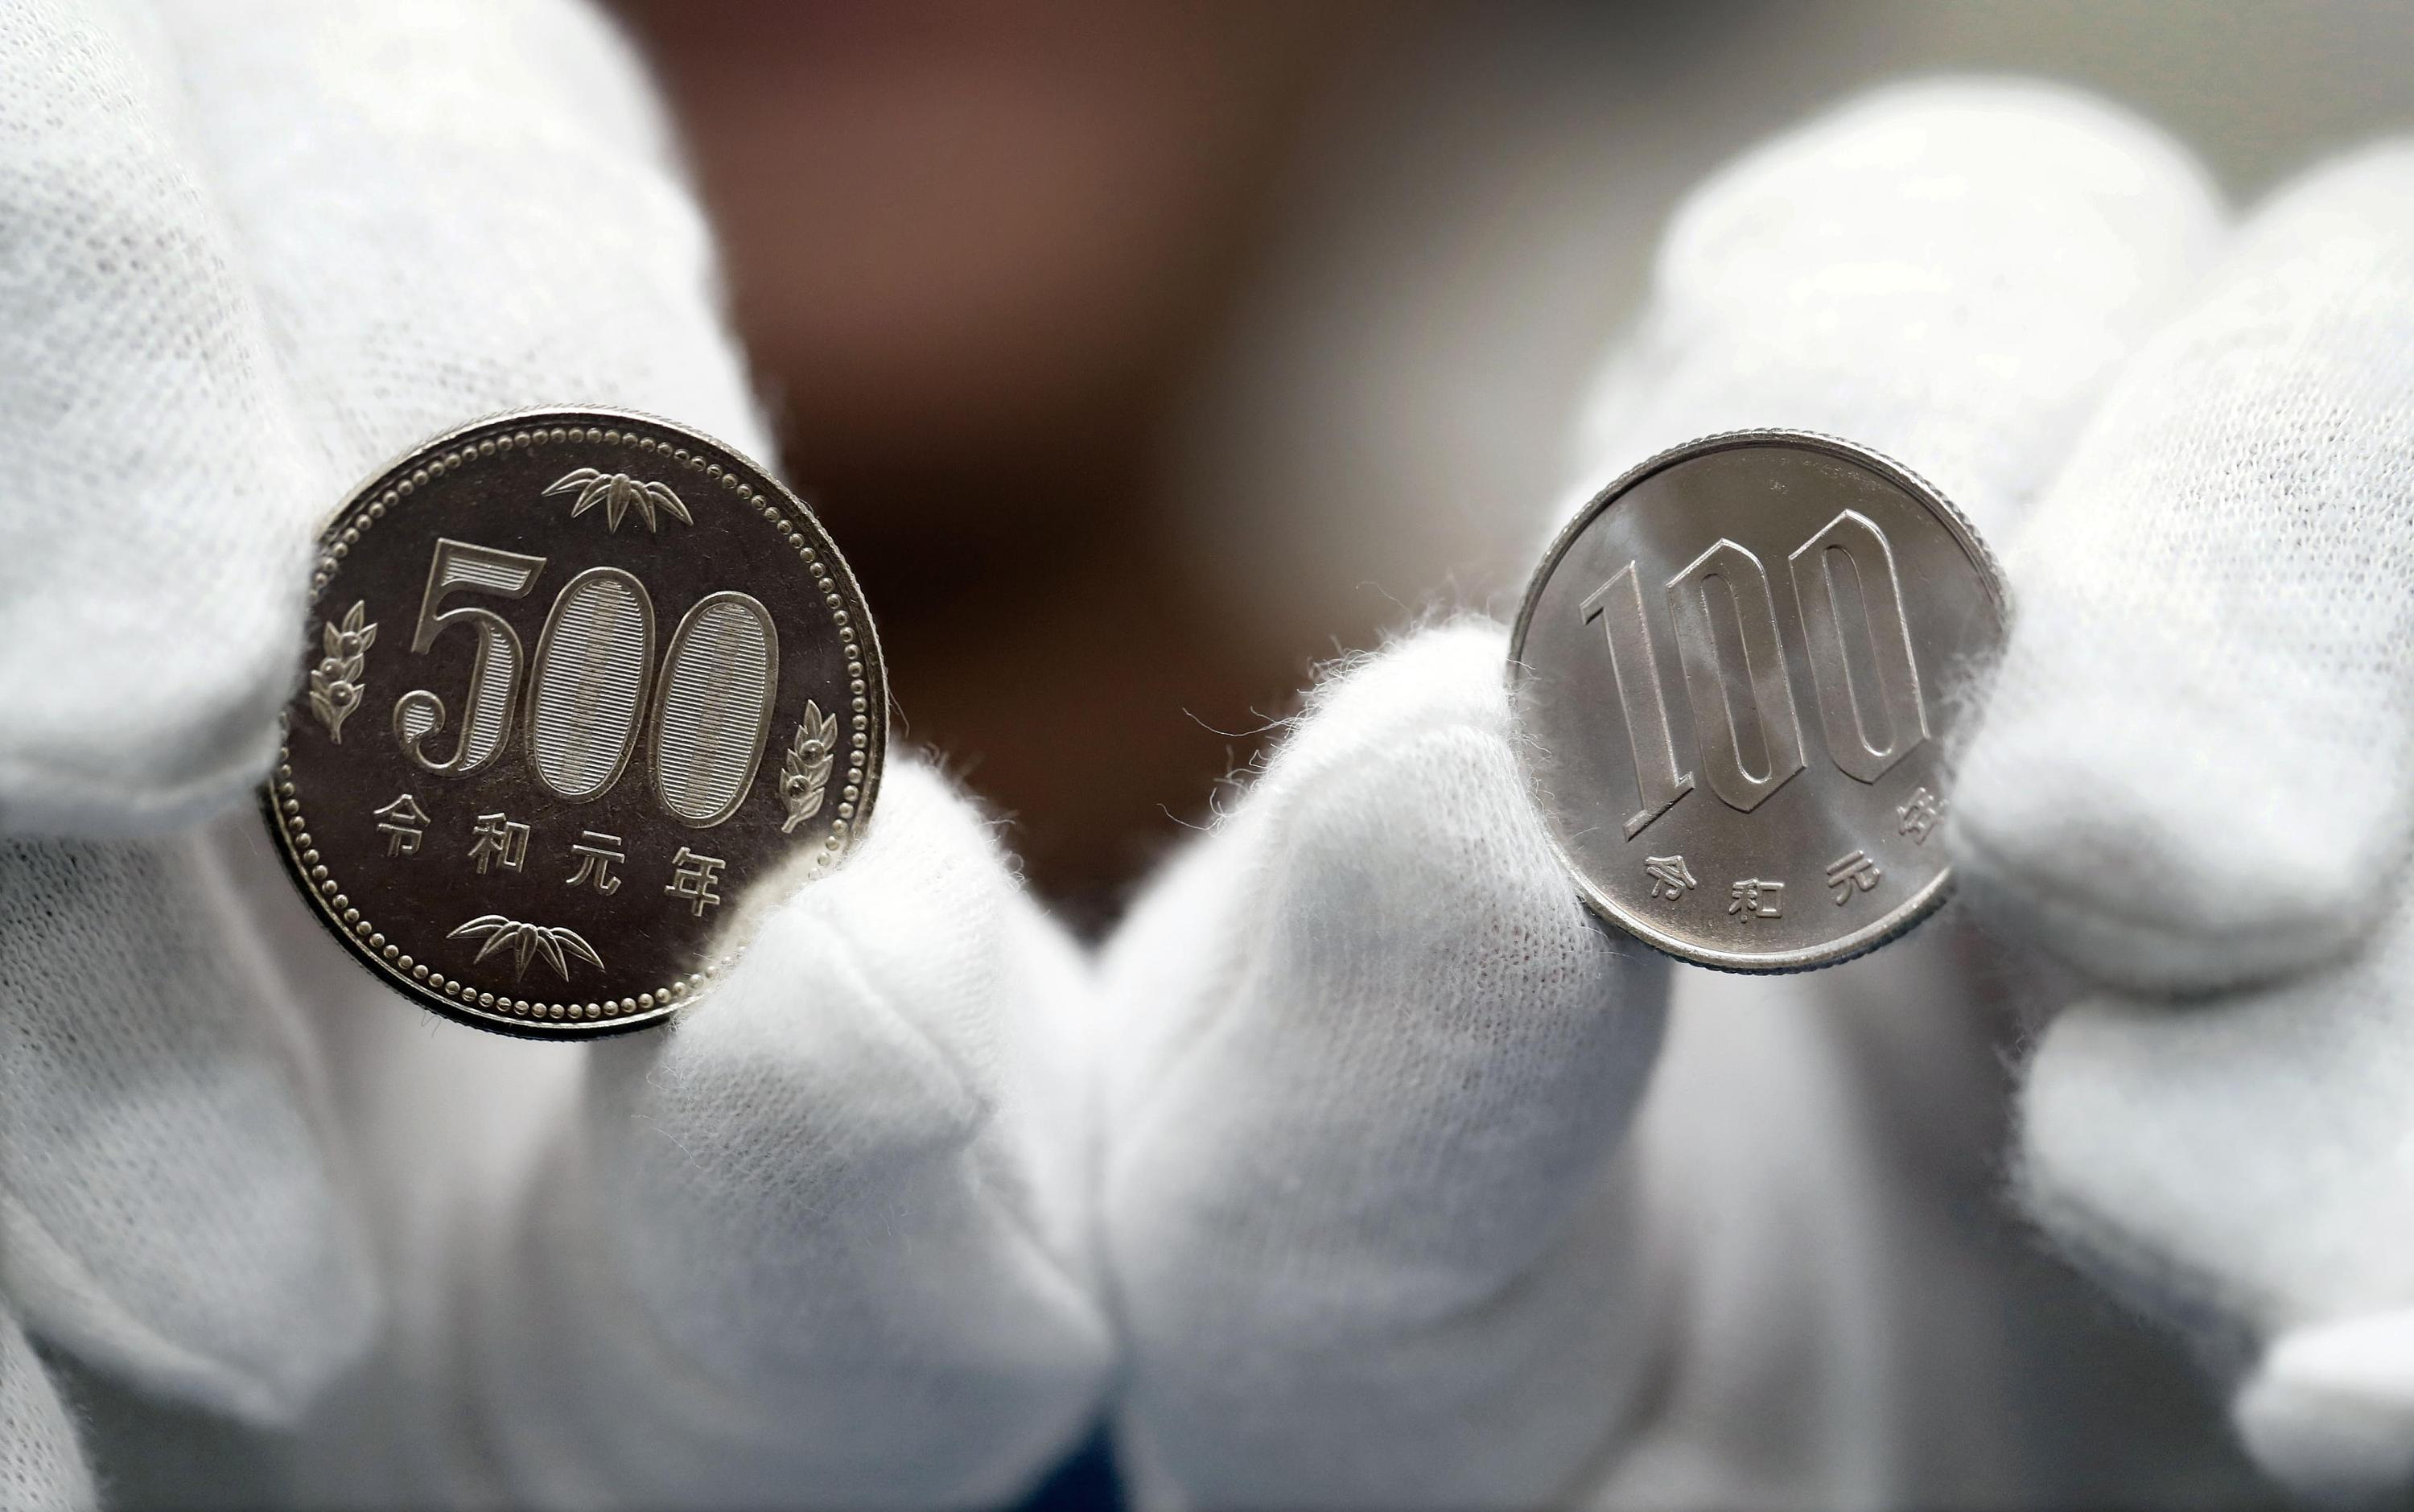 日本铸造“令和元年”硬币 并推出新天皇即位纪念币